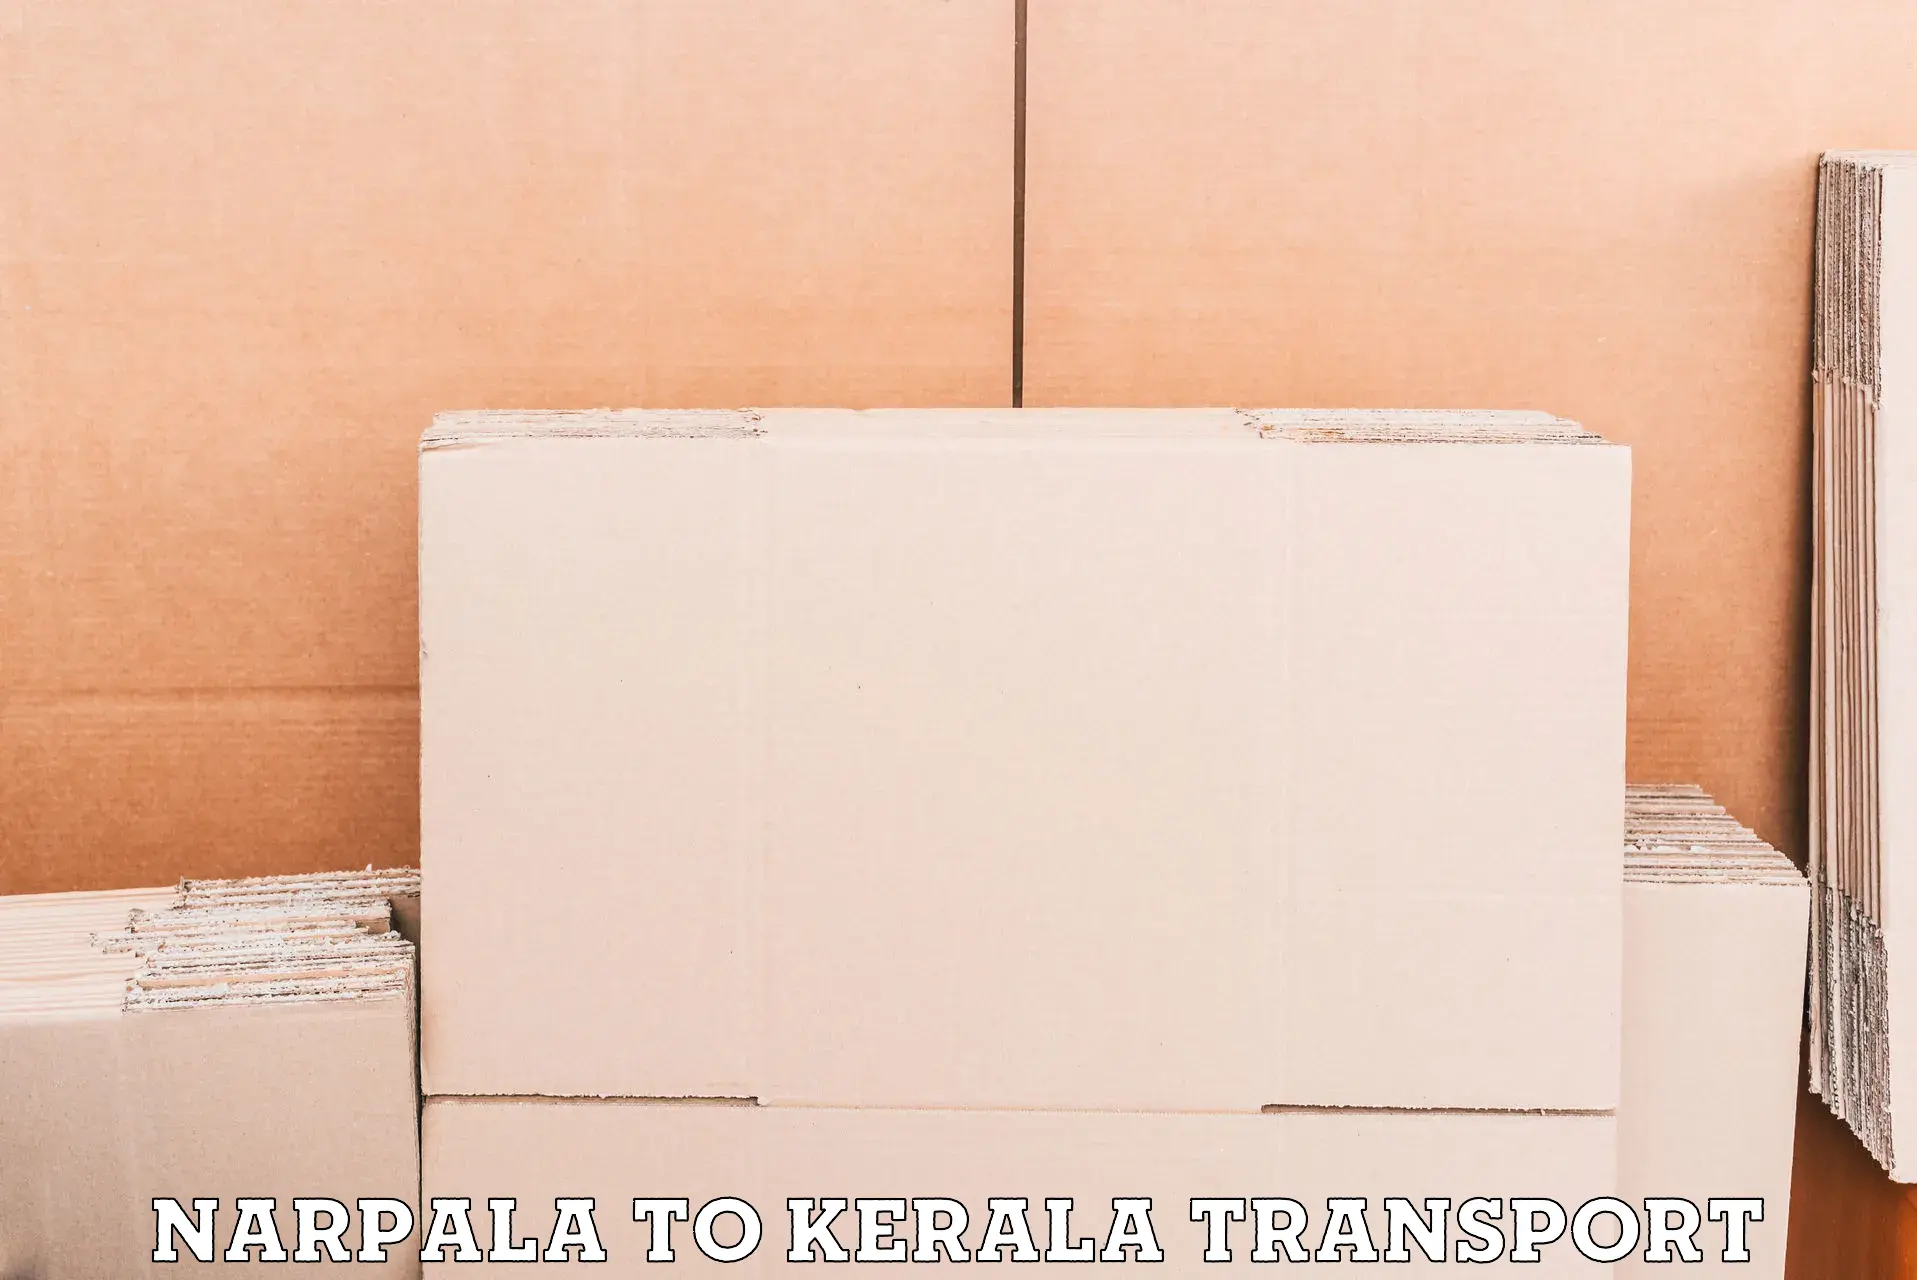 Nearest transport service Narpala to Mananthavady